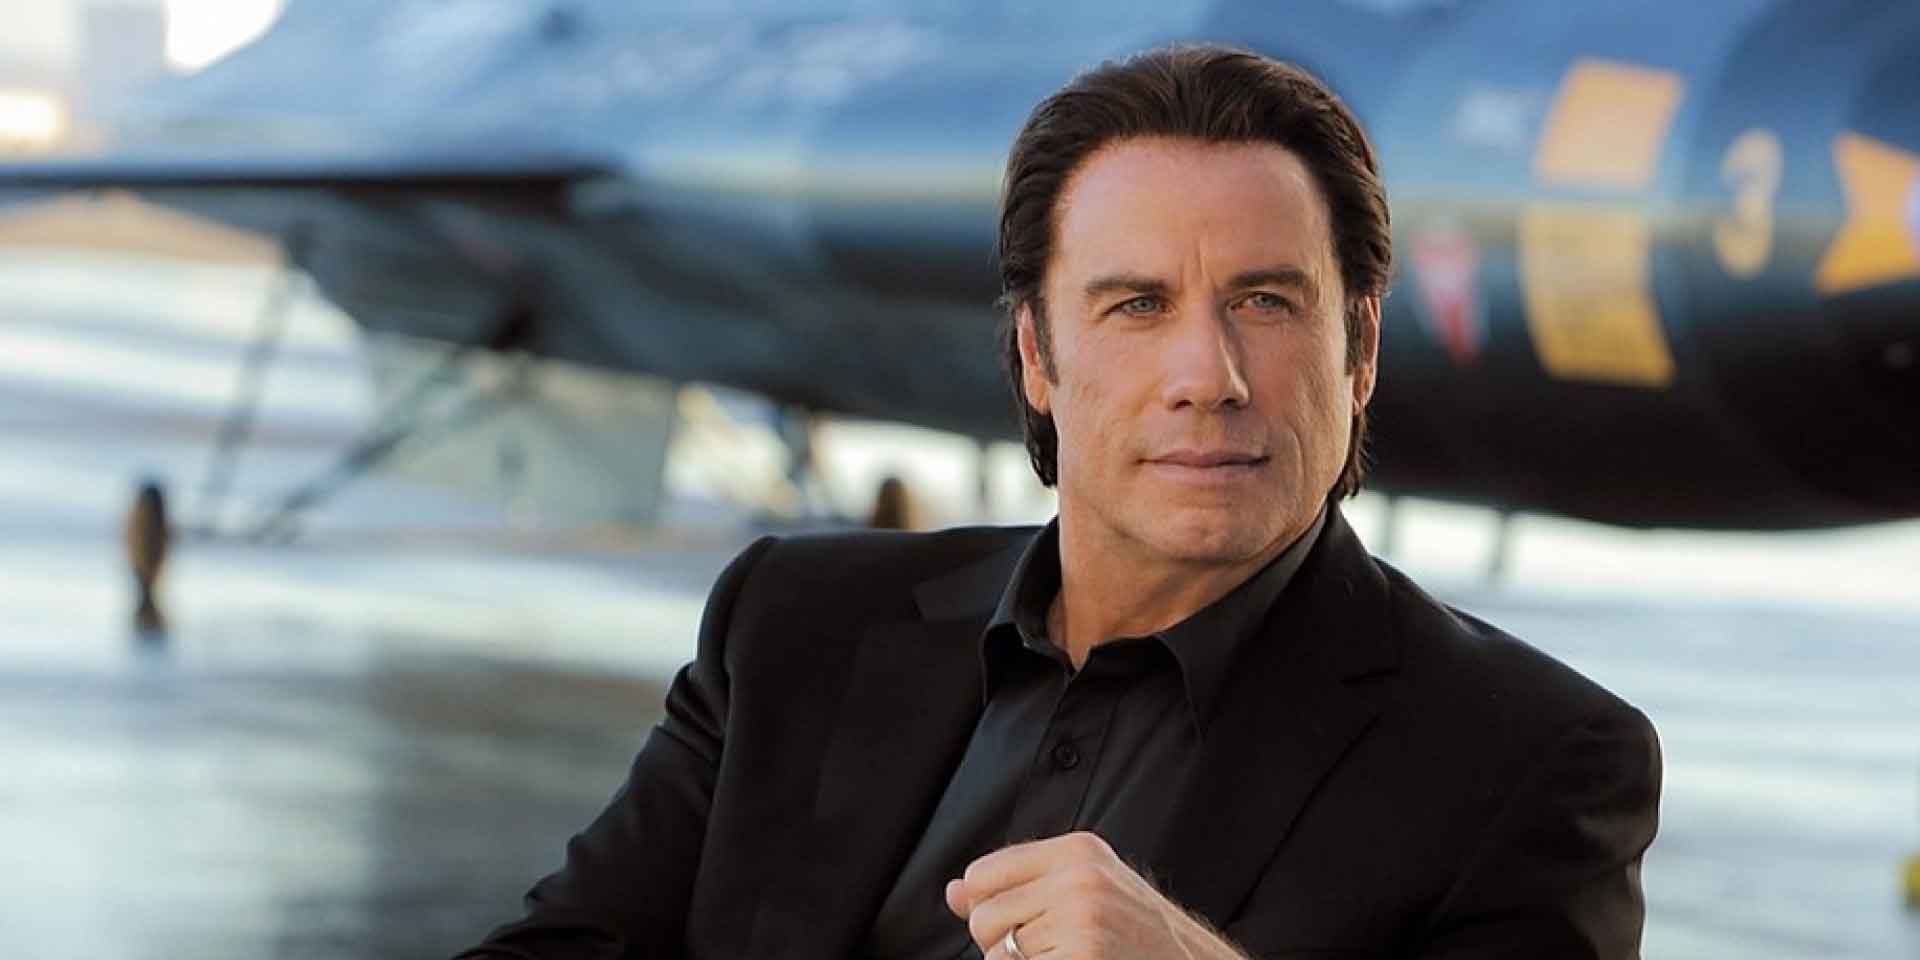 Why does John Travolta wear wigs?